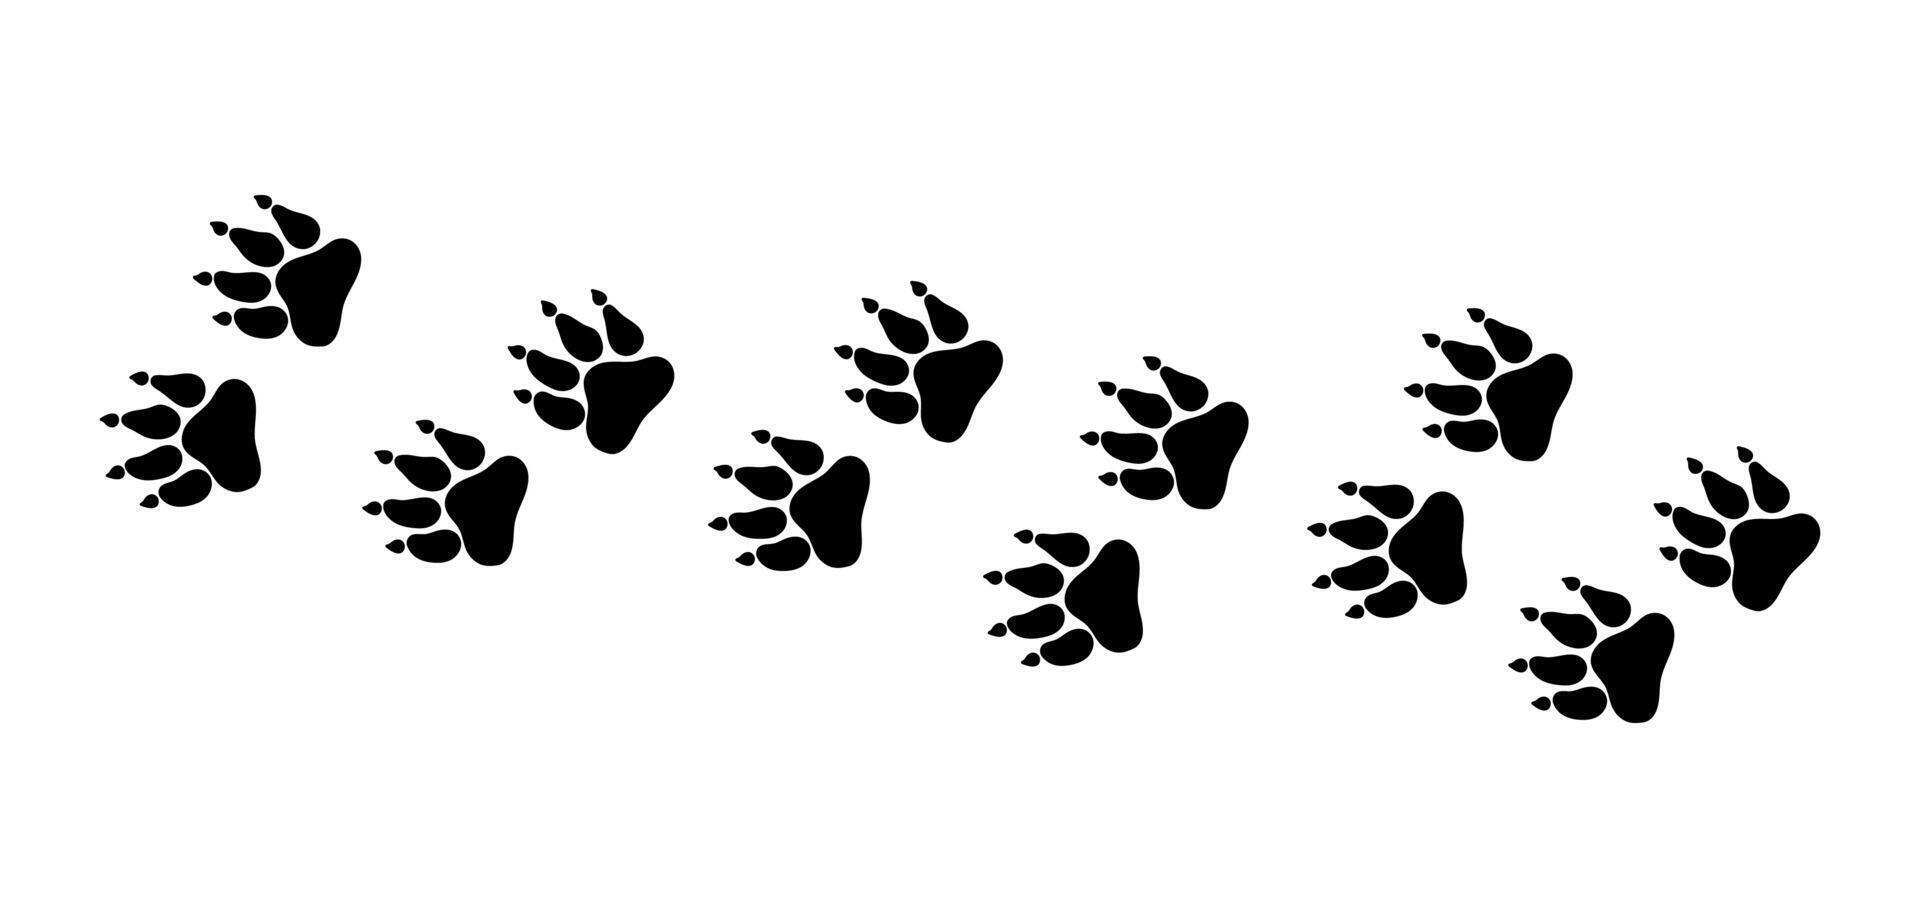 där är många spår av silhuetter av svart tassar av en vild djur- - en hund. illustration vektor